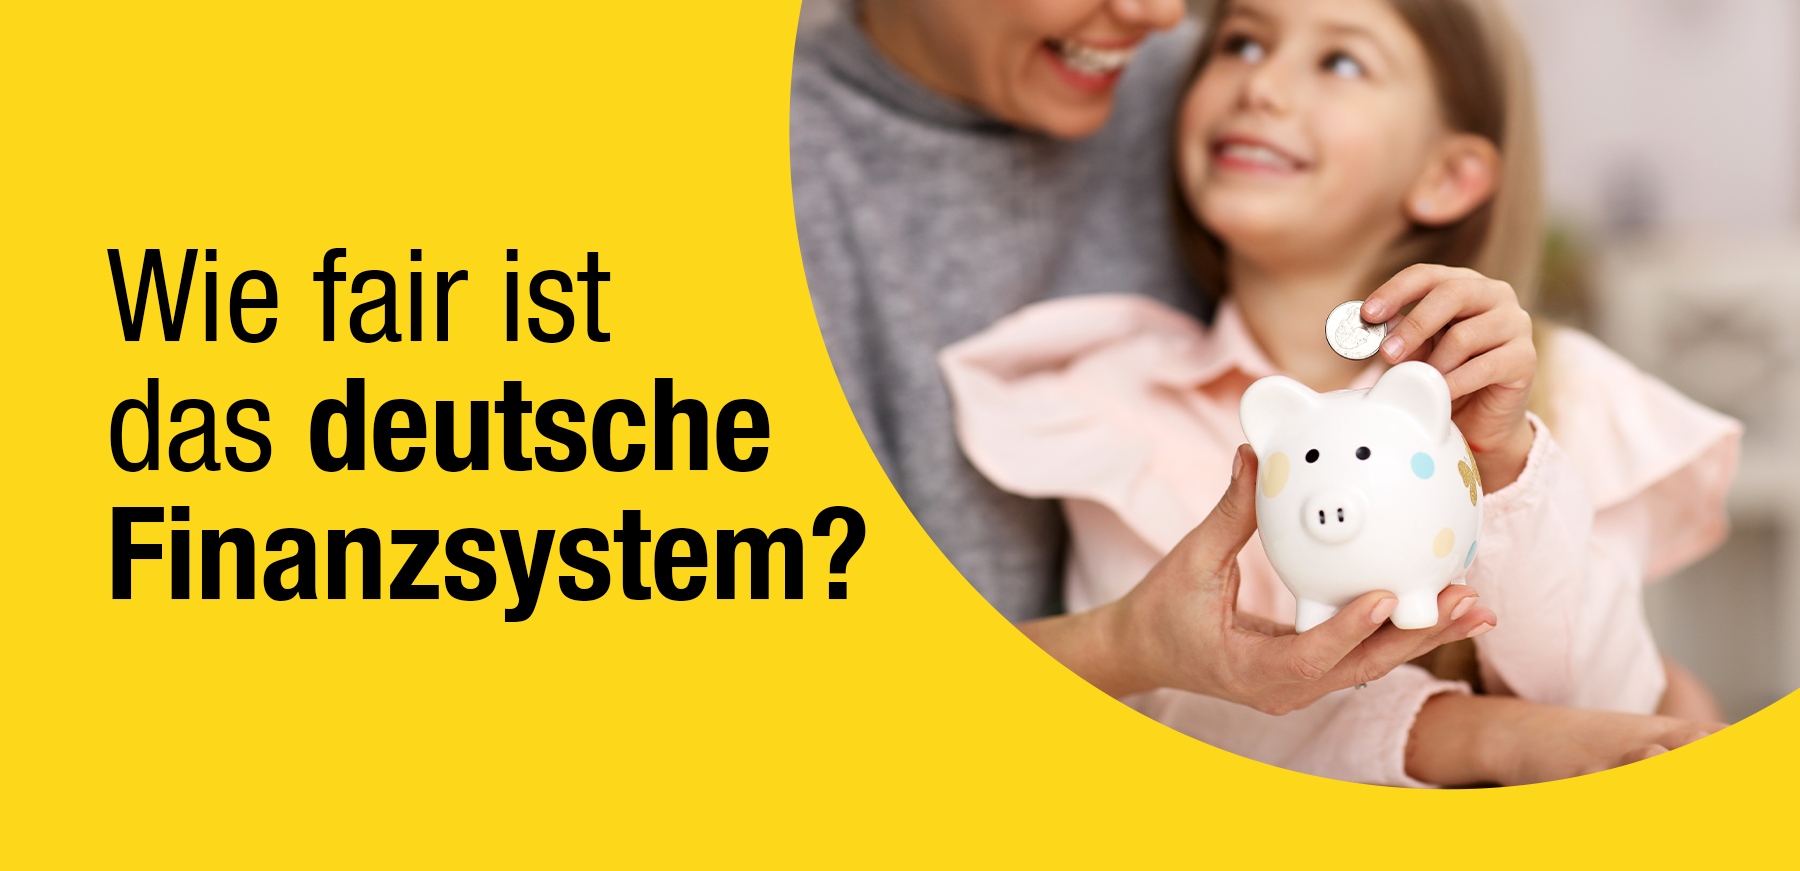 Foto: Wie fair ist das deutsche Finanzsystem? Mutter und Kind mit Sparschwein im Hintergrund